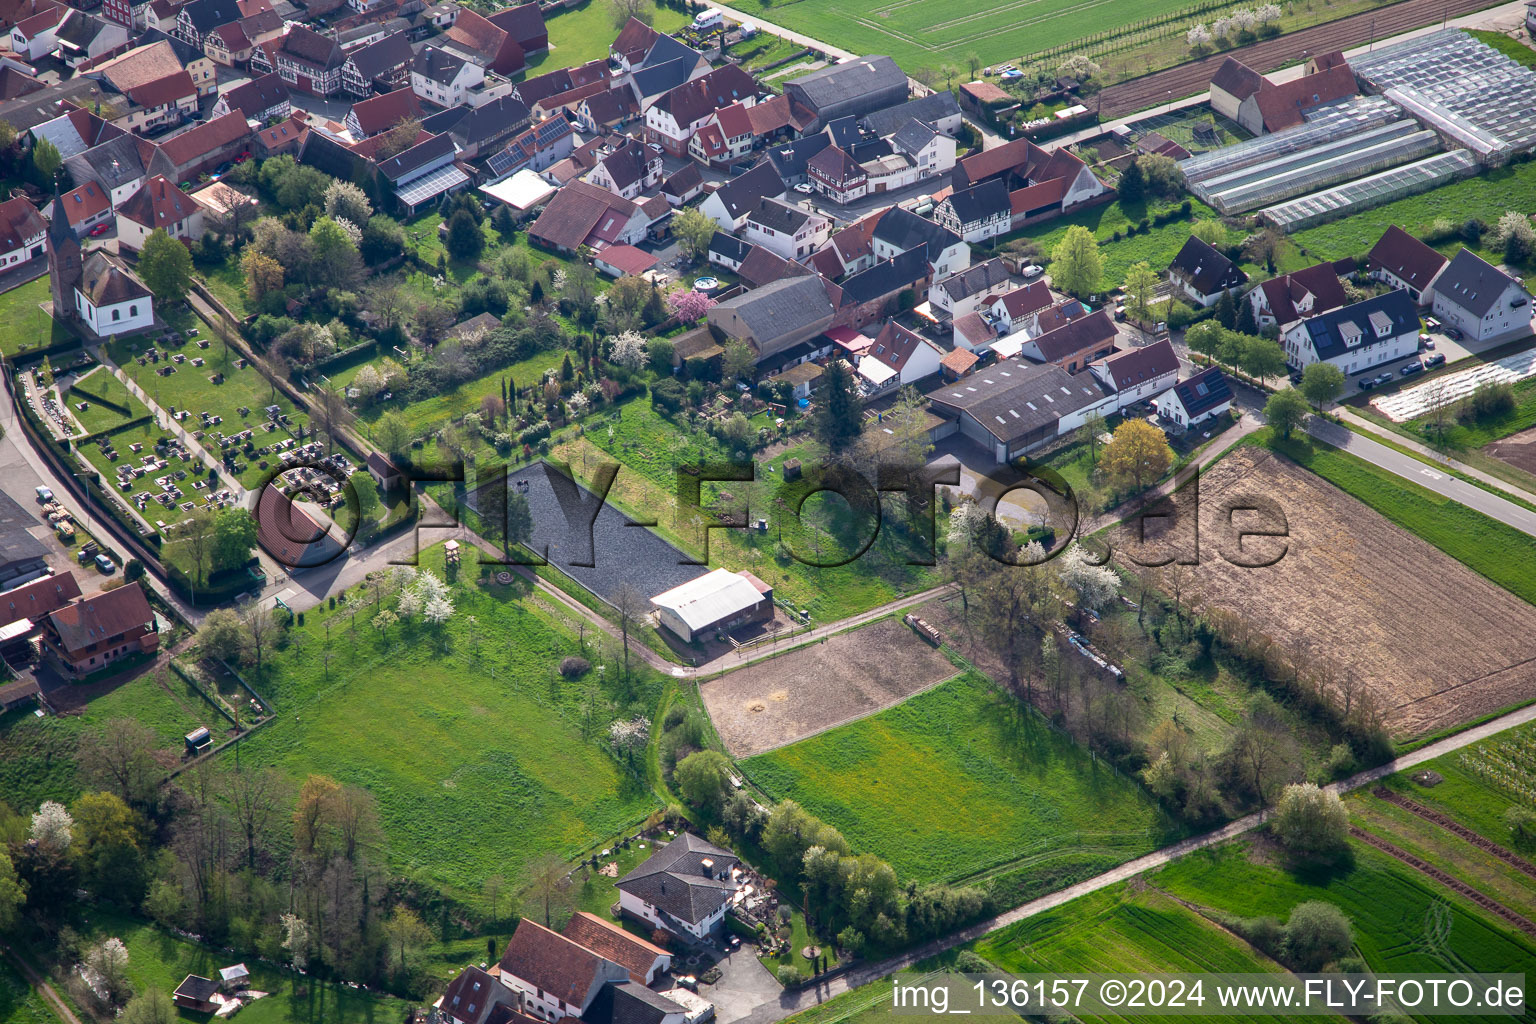 Luftbild von Reitanlage am Friedhof in Winden im Bundesland Rheinland-Pfalz, Deutschland